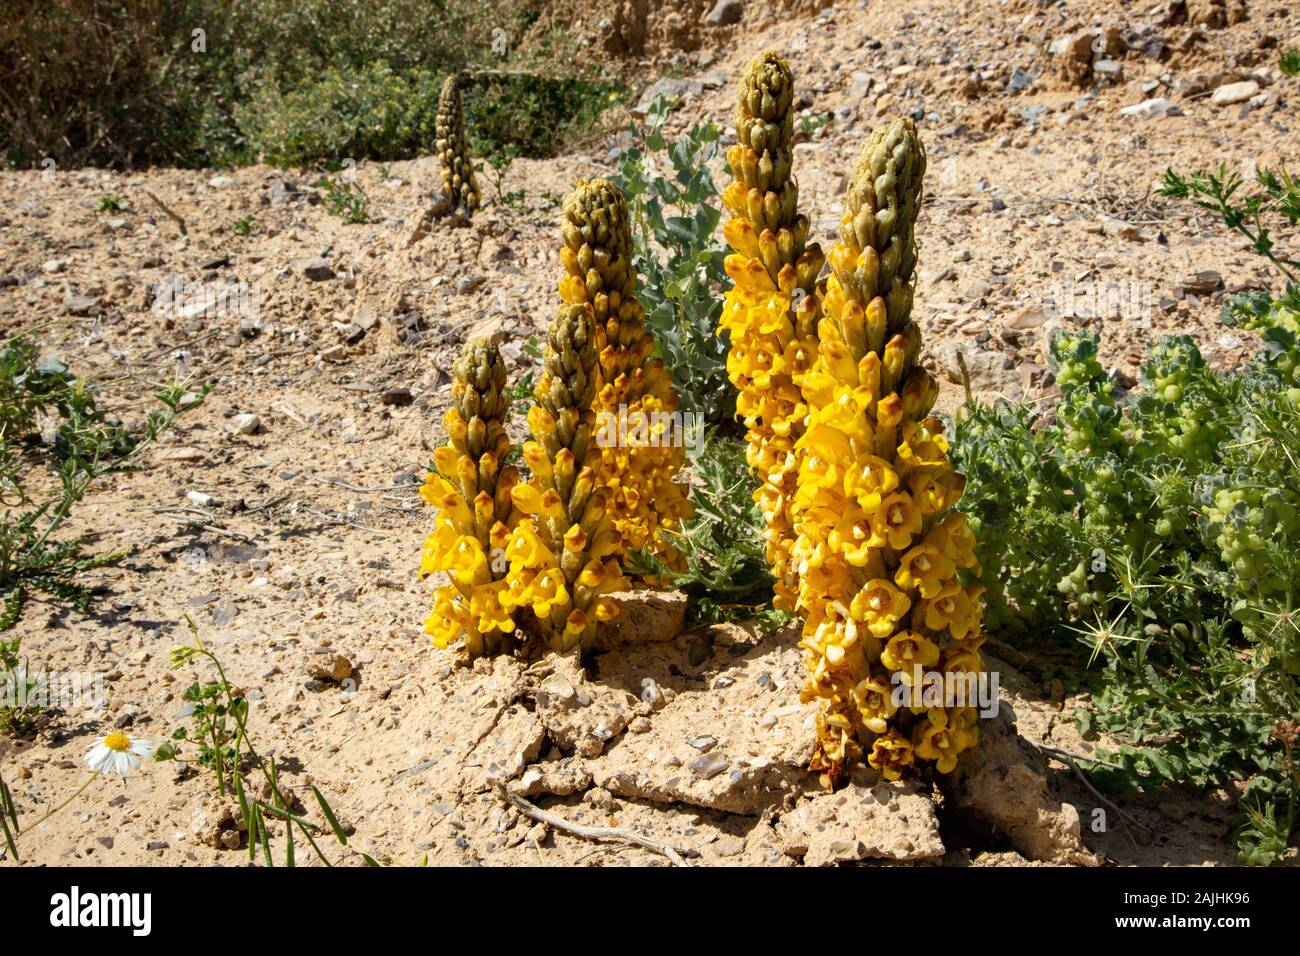 Cistanche (Cistanche tubulosa) parasitize desert plants. Stock Photo